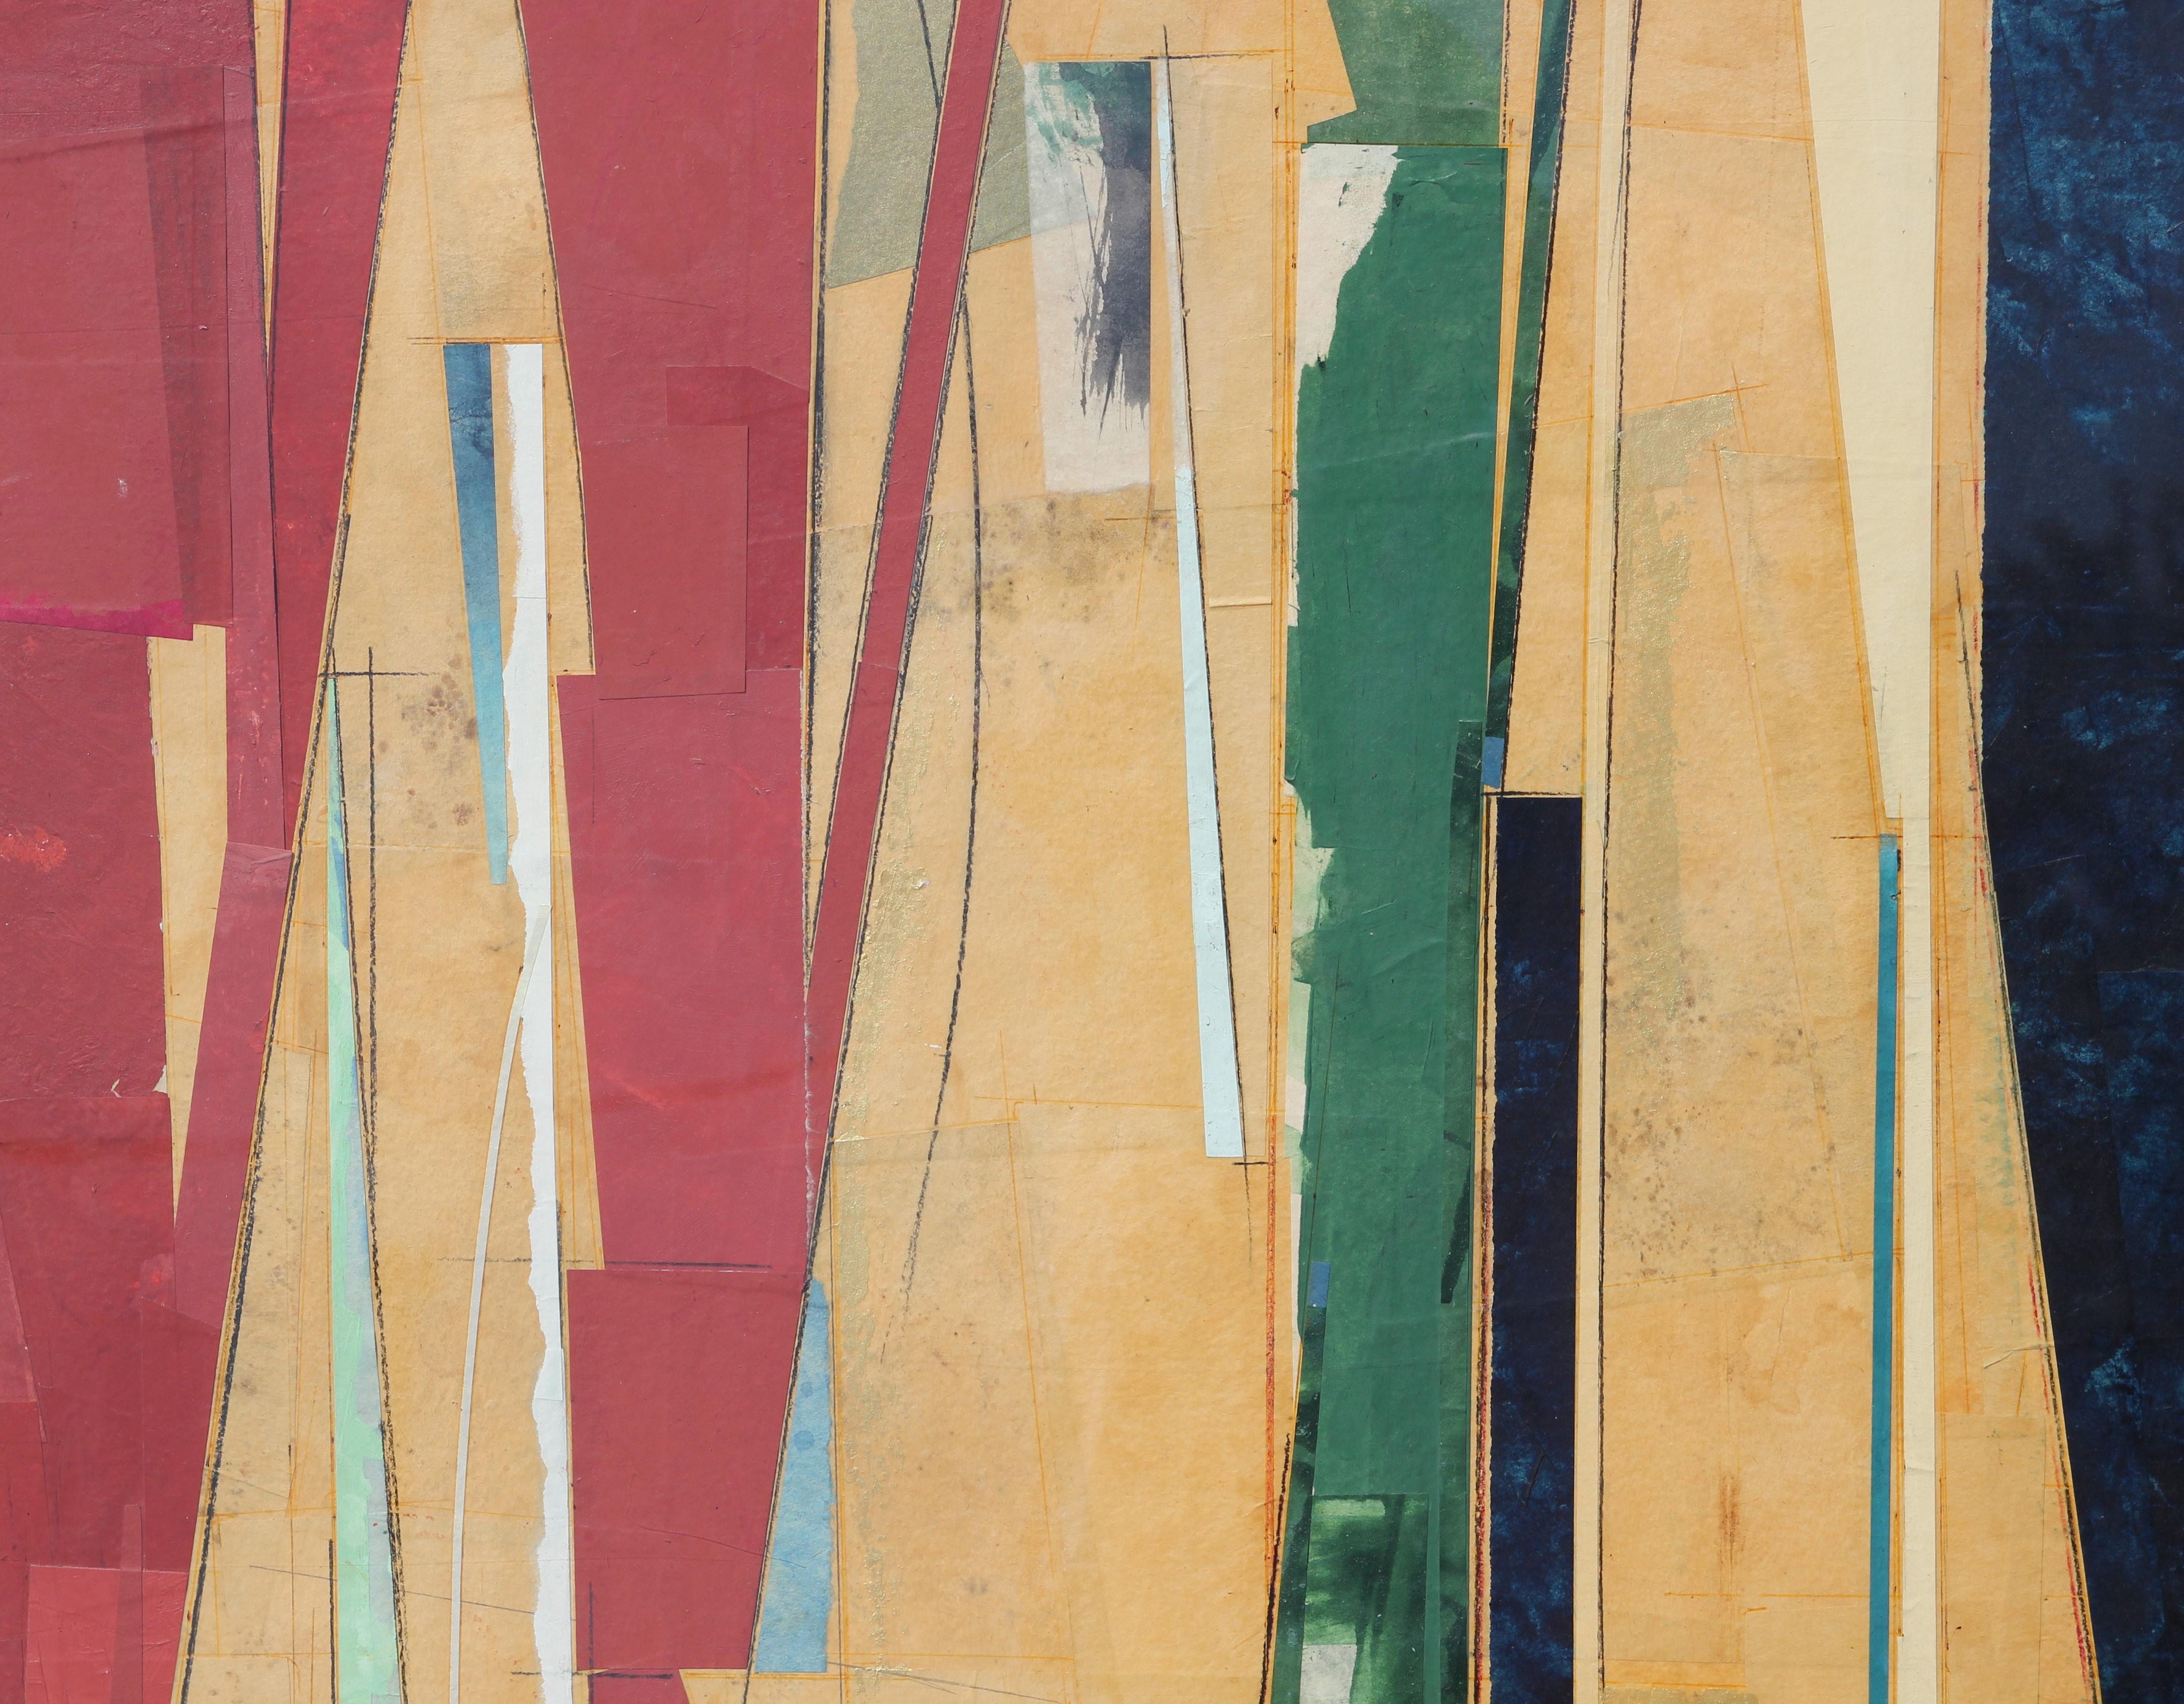 Grande peinture moderne abstraite géométrique rouge, jaune et verte en techniques mixtes (collage) - Painting de John Pavlicek